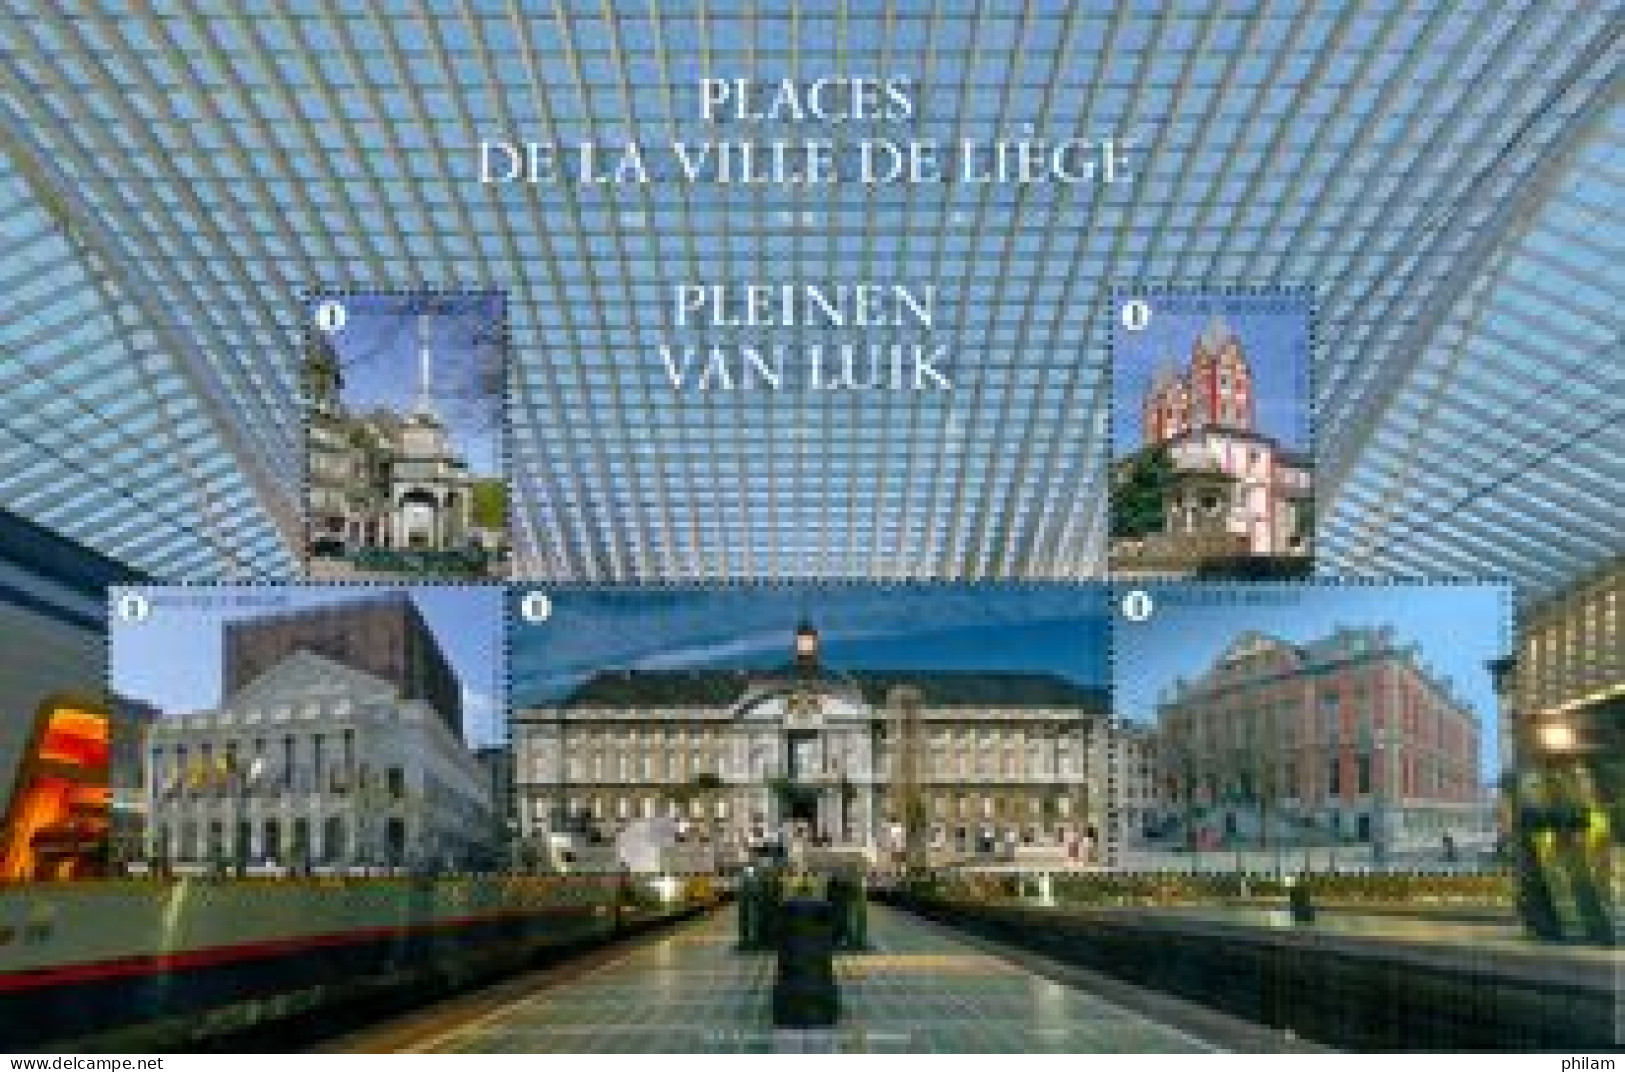 BELGIQUE 2019 - NA 41 - Places De Et à Liège - Niet-aangenomen Ontwerpen [NA]